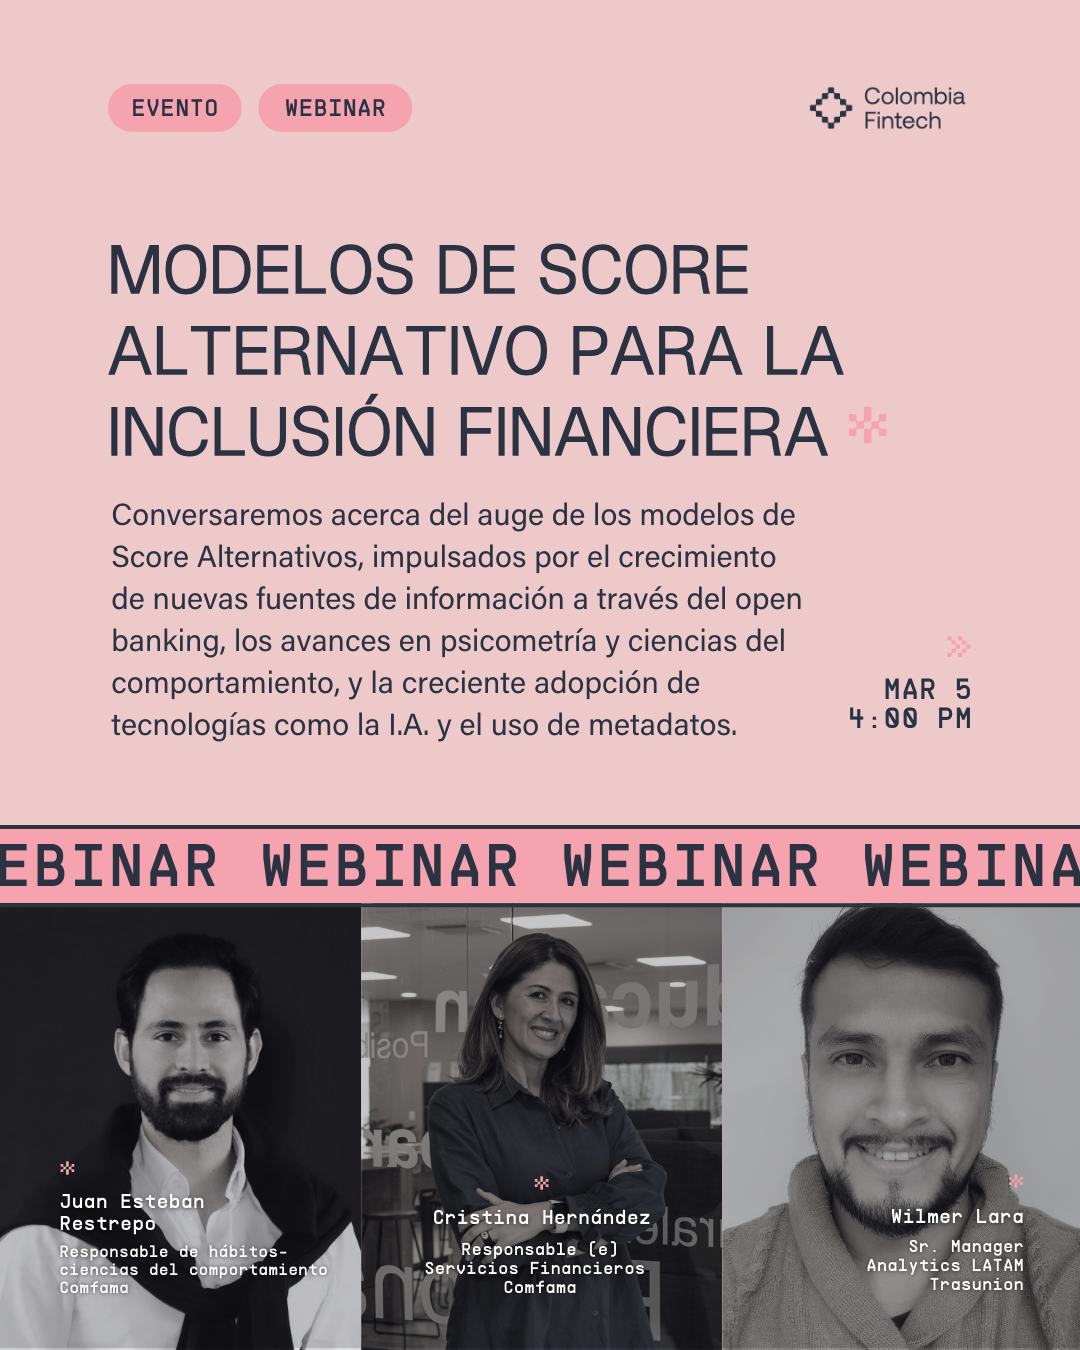  Modelos de score alternativo para la inclusión financiera